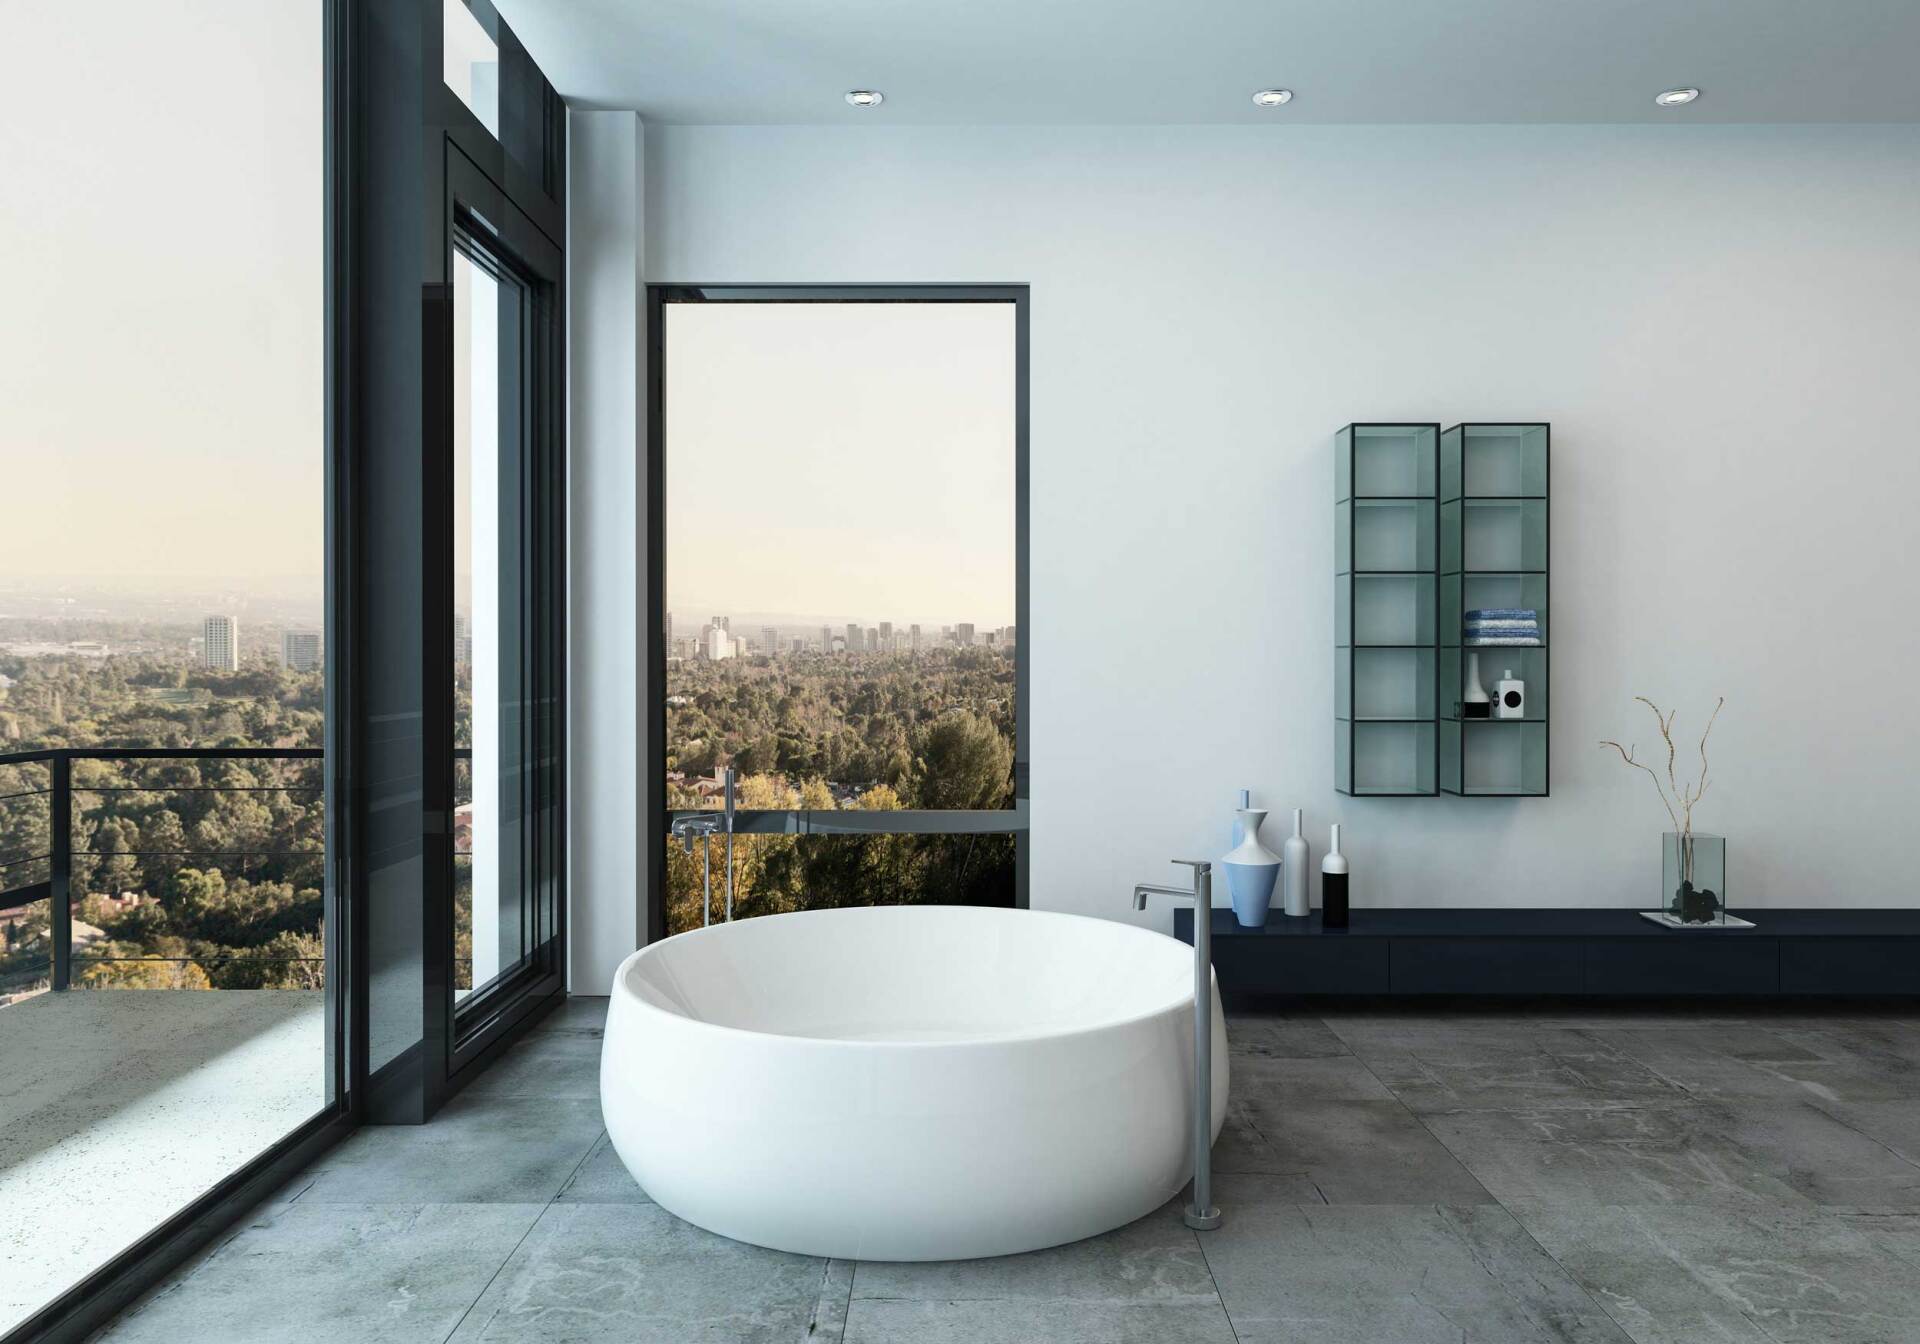 Une salle de bain avec du travertin couleur gris foncé au sol